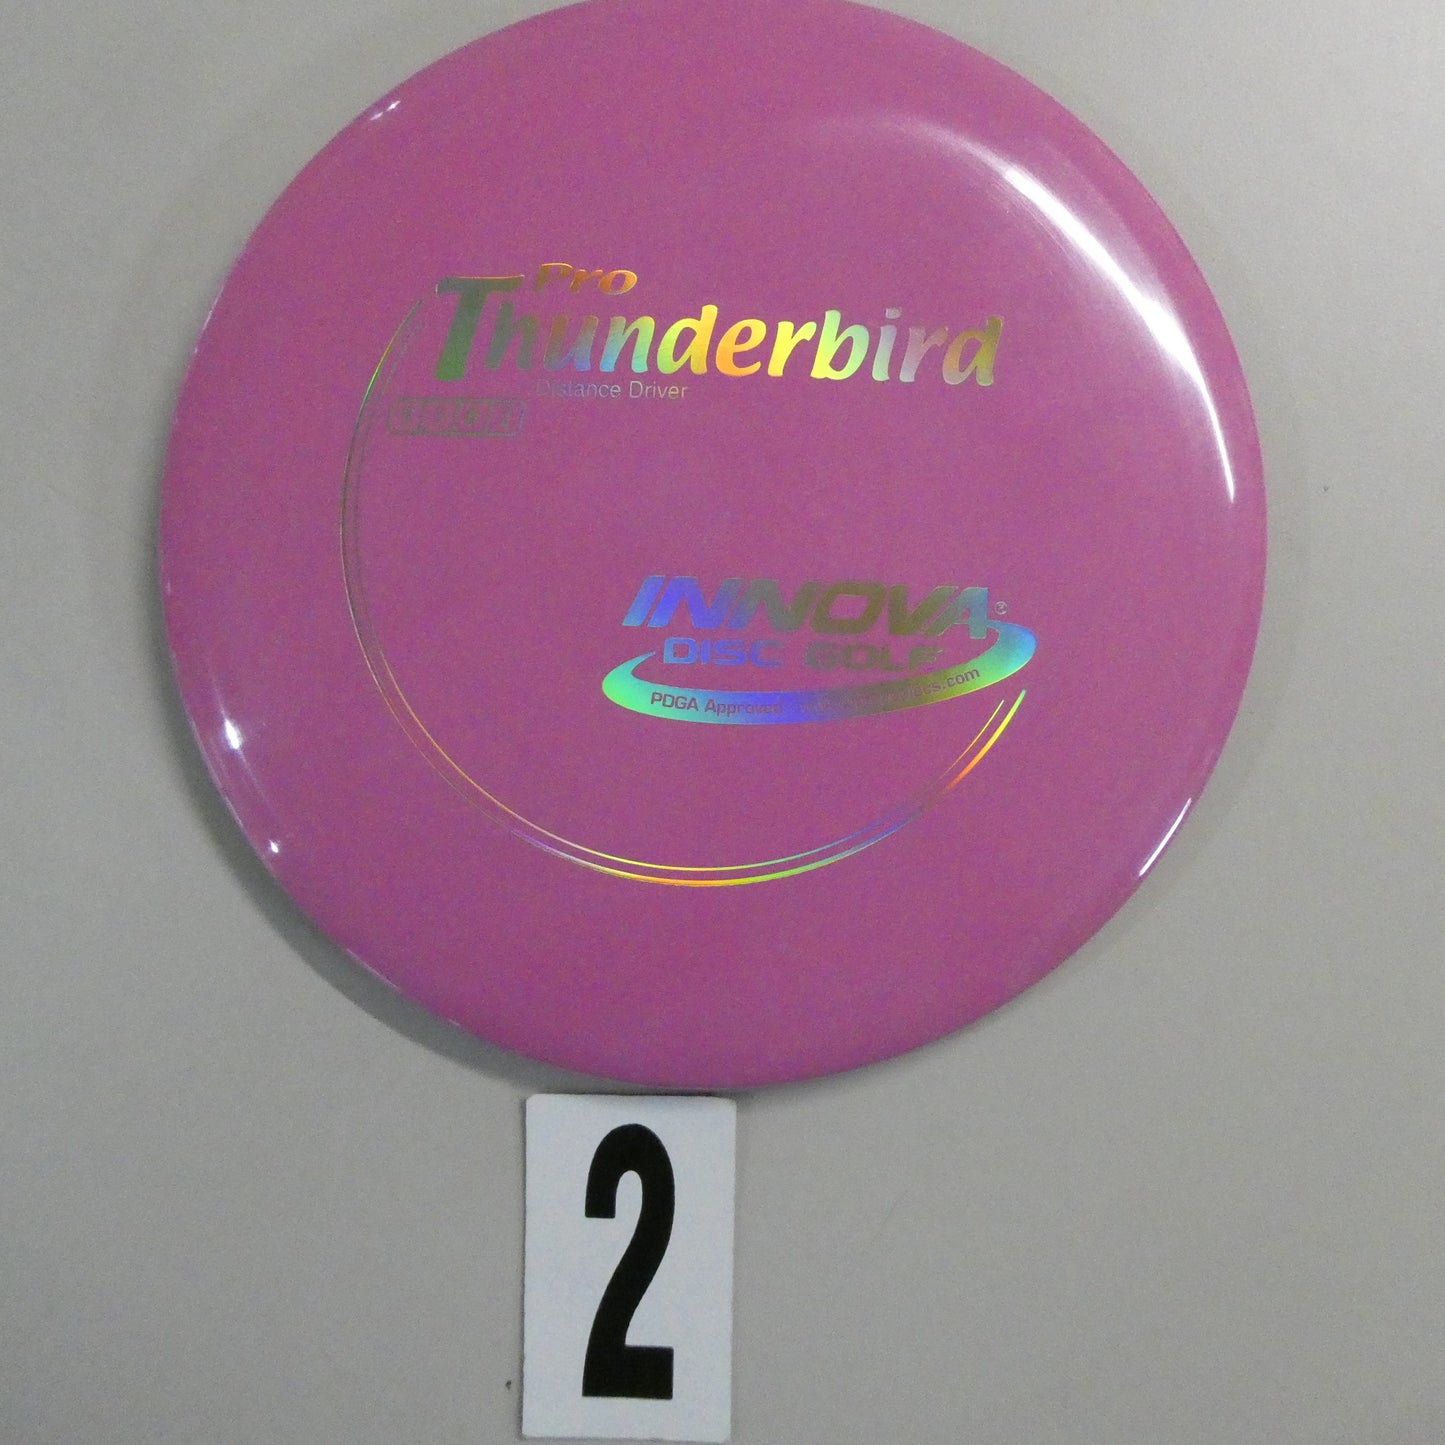 Pro Thunderbird